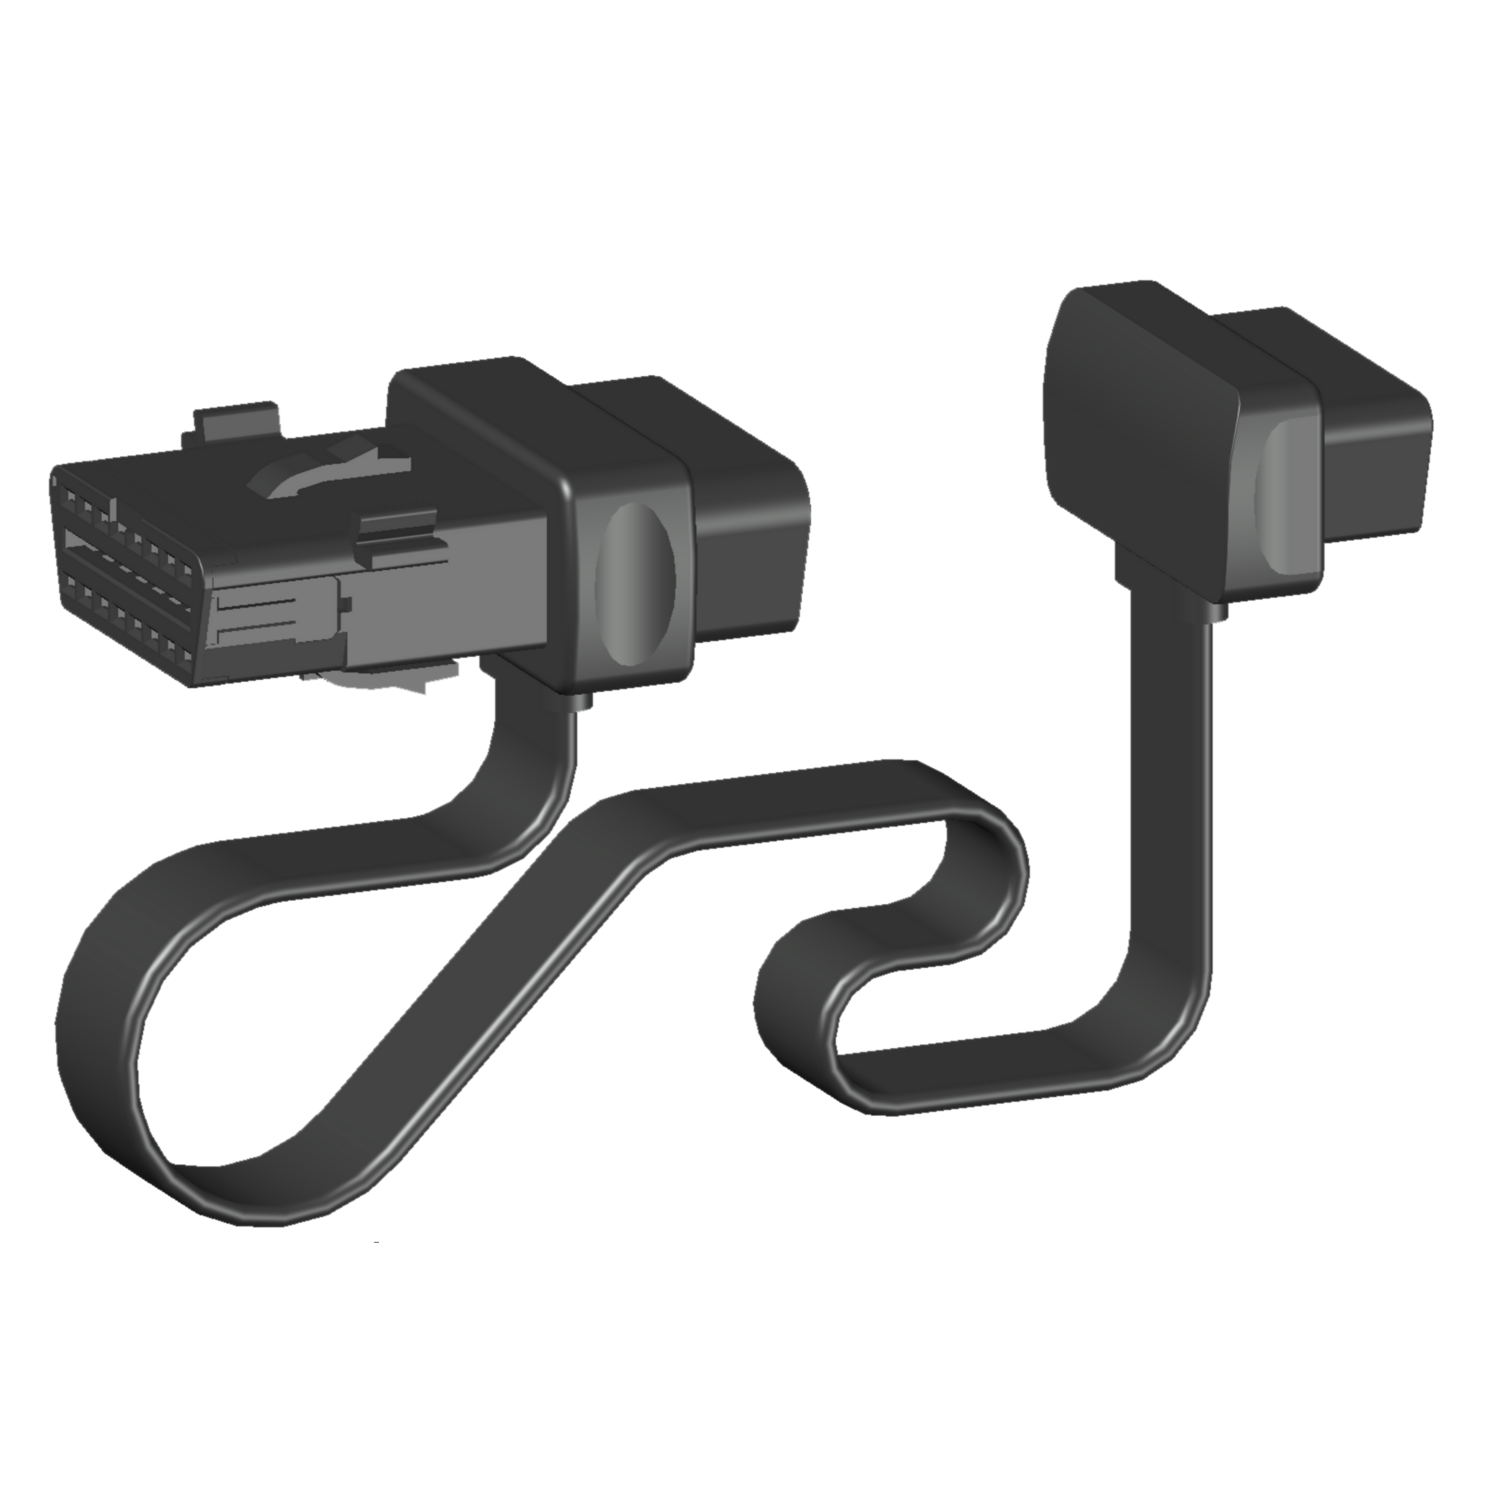 obd-ii-y-connector-cable